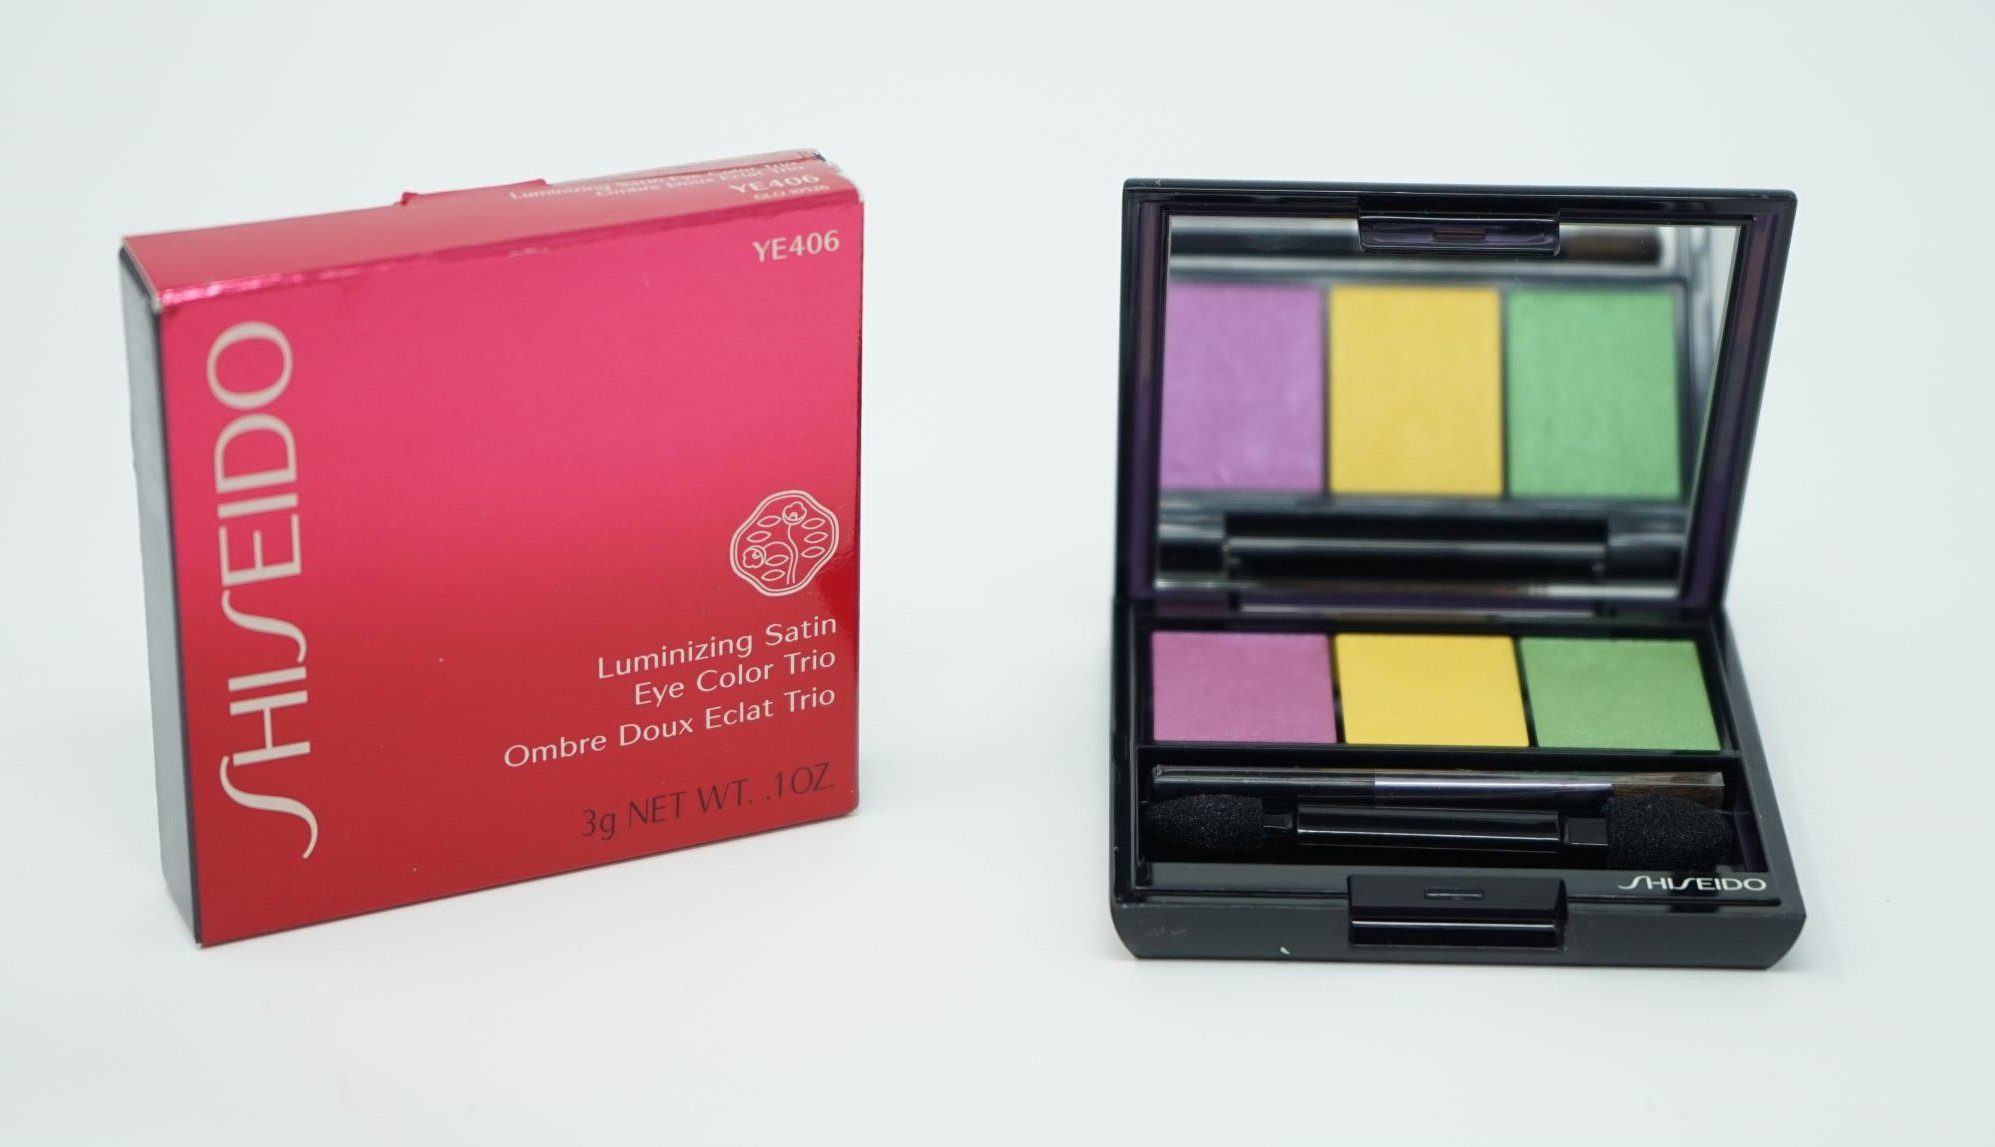 SHISEIDO Eau de Toilette Shiseido Luminizing Satin Eye Color Trio Lidschatten YE406, 3 g